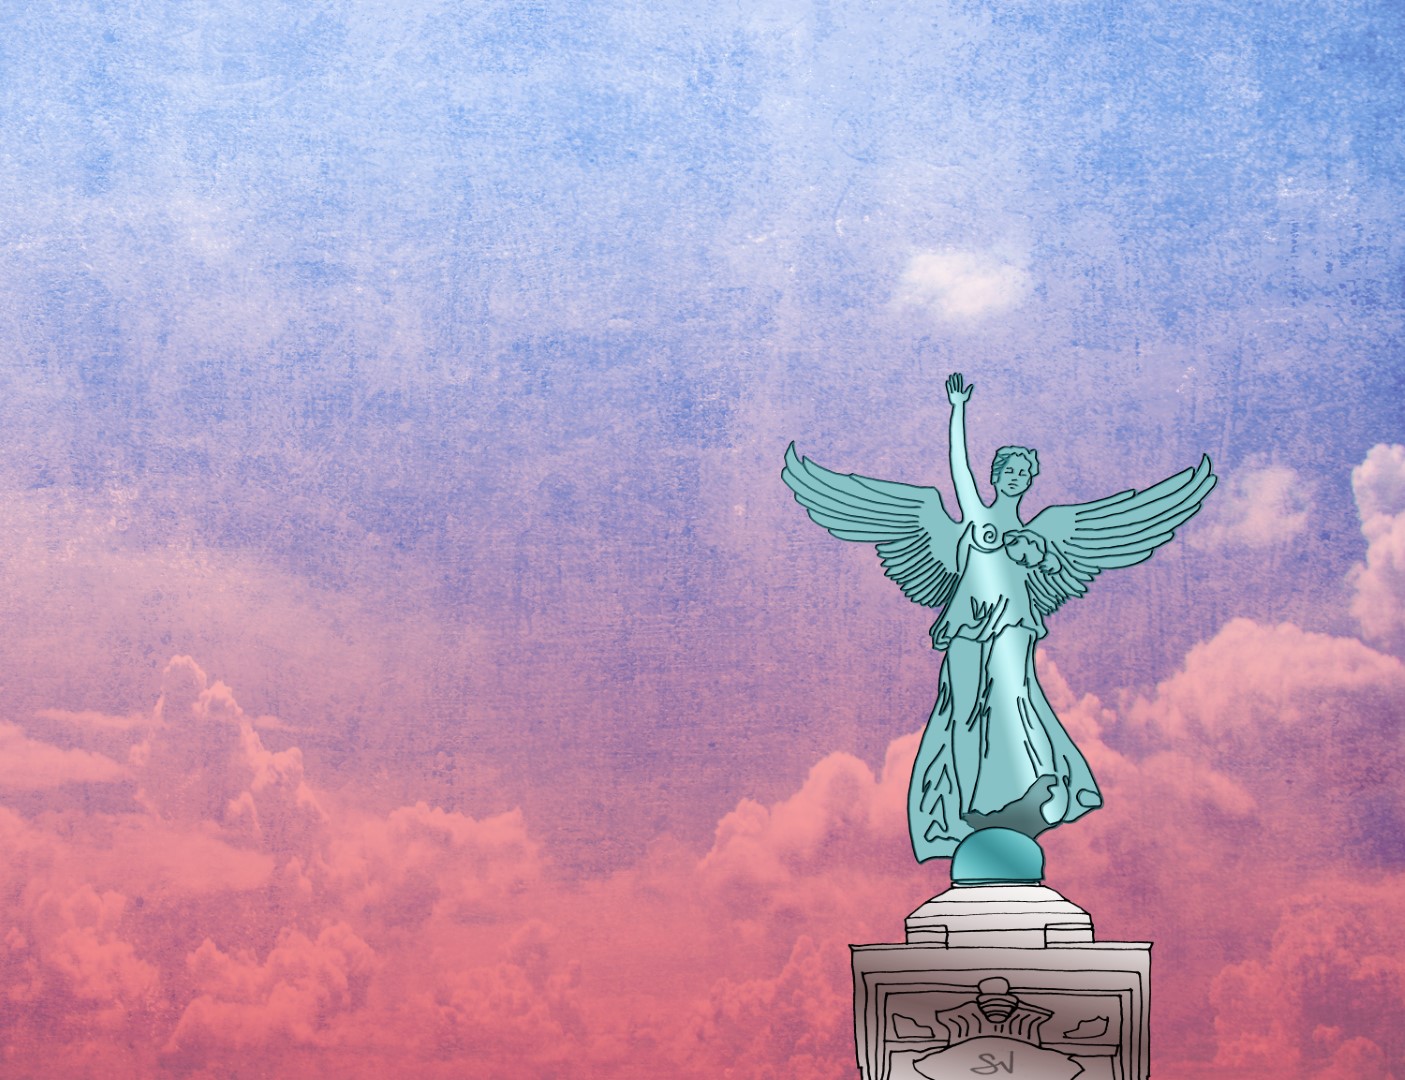 La "statue de l'ange" à l'entrée du parc du Mont-Royal, le bras levé vers un petit nuage blanc dans un ciel matinal allant du rose au bleu.